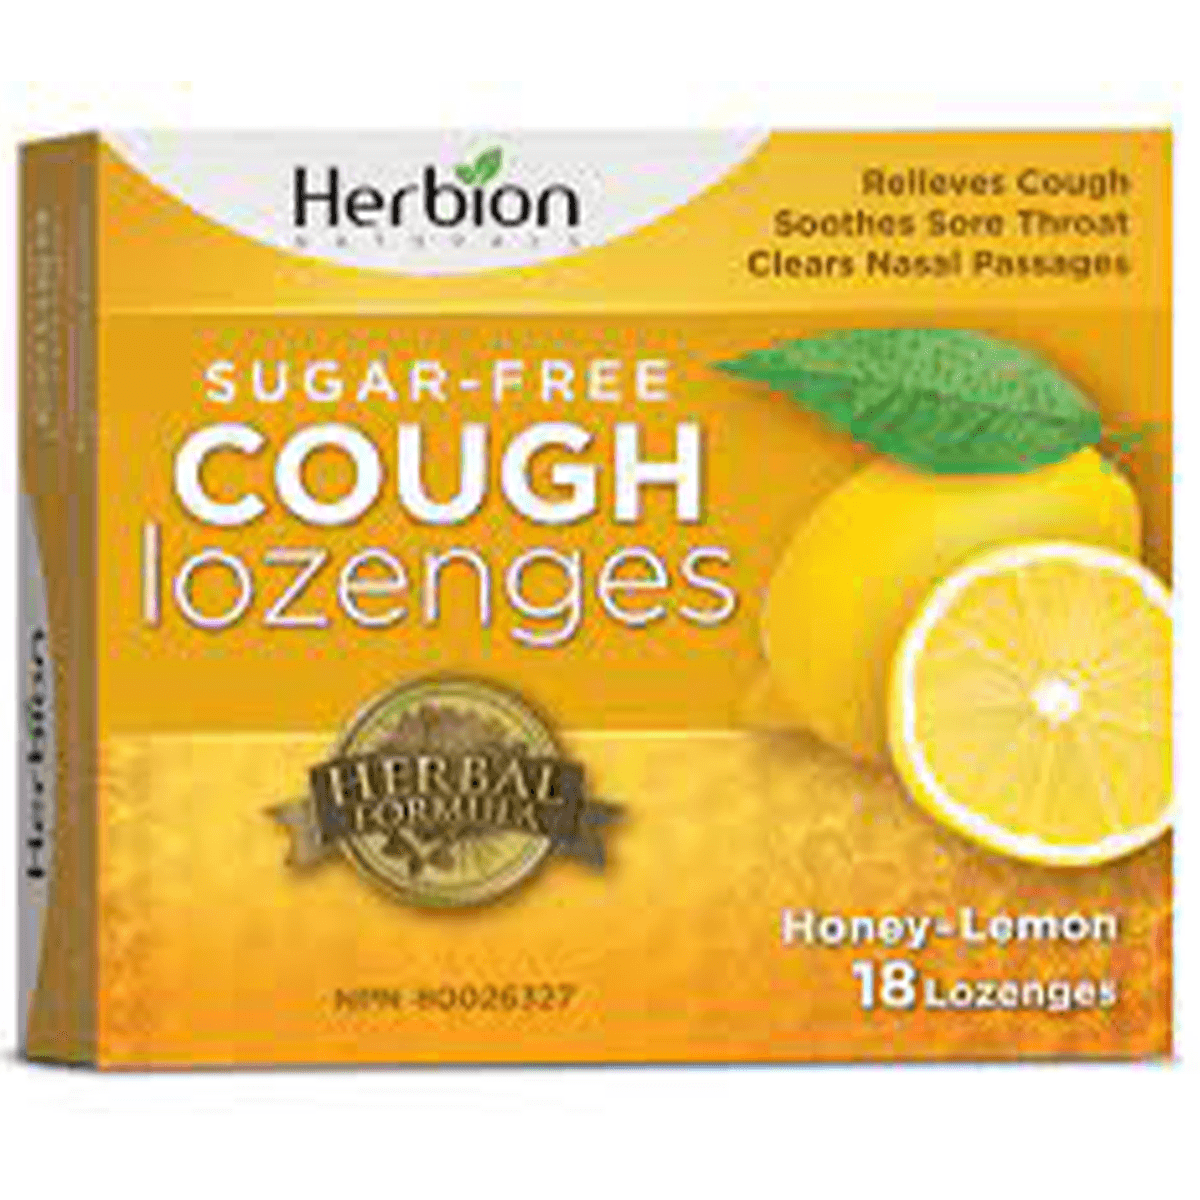 Herbion Sugar Free Cough Lozenges Honey Lemon 18 Lozenges Cough, Cold & Flu at Village Vitamin Store